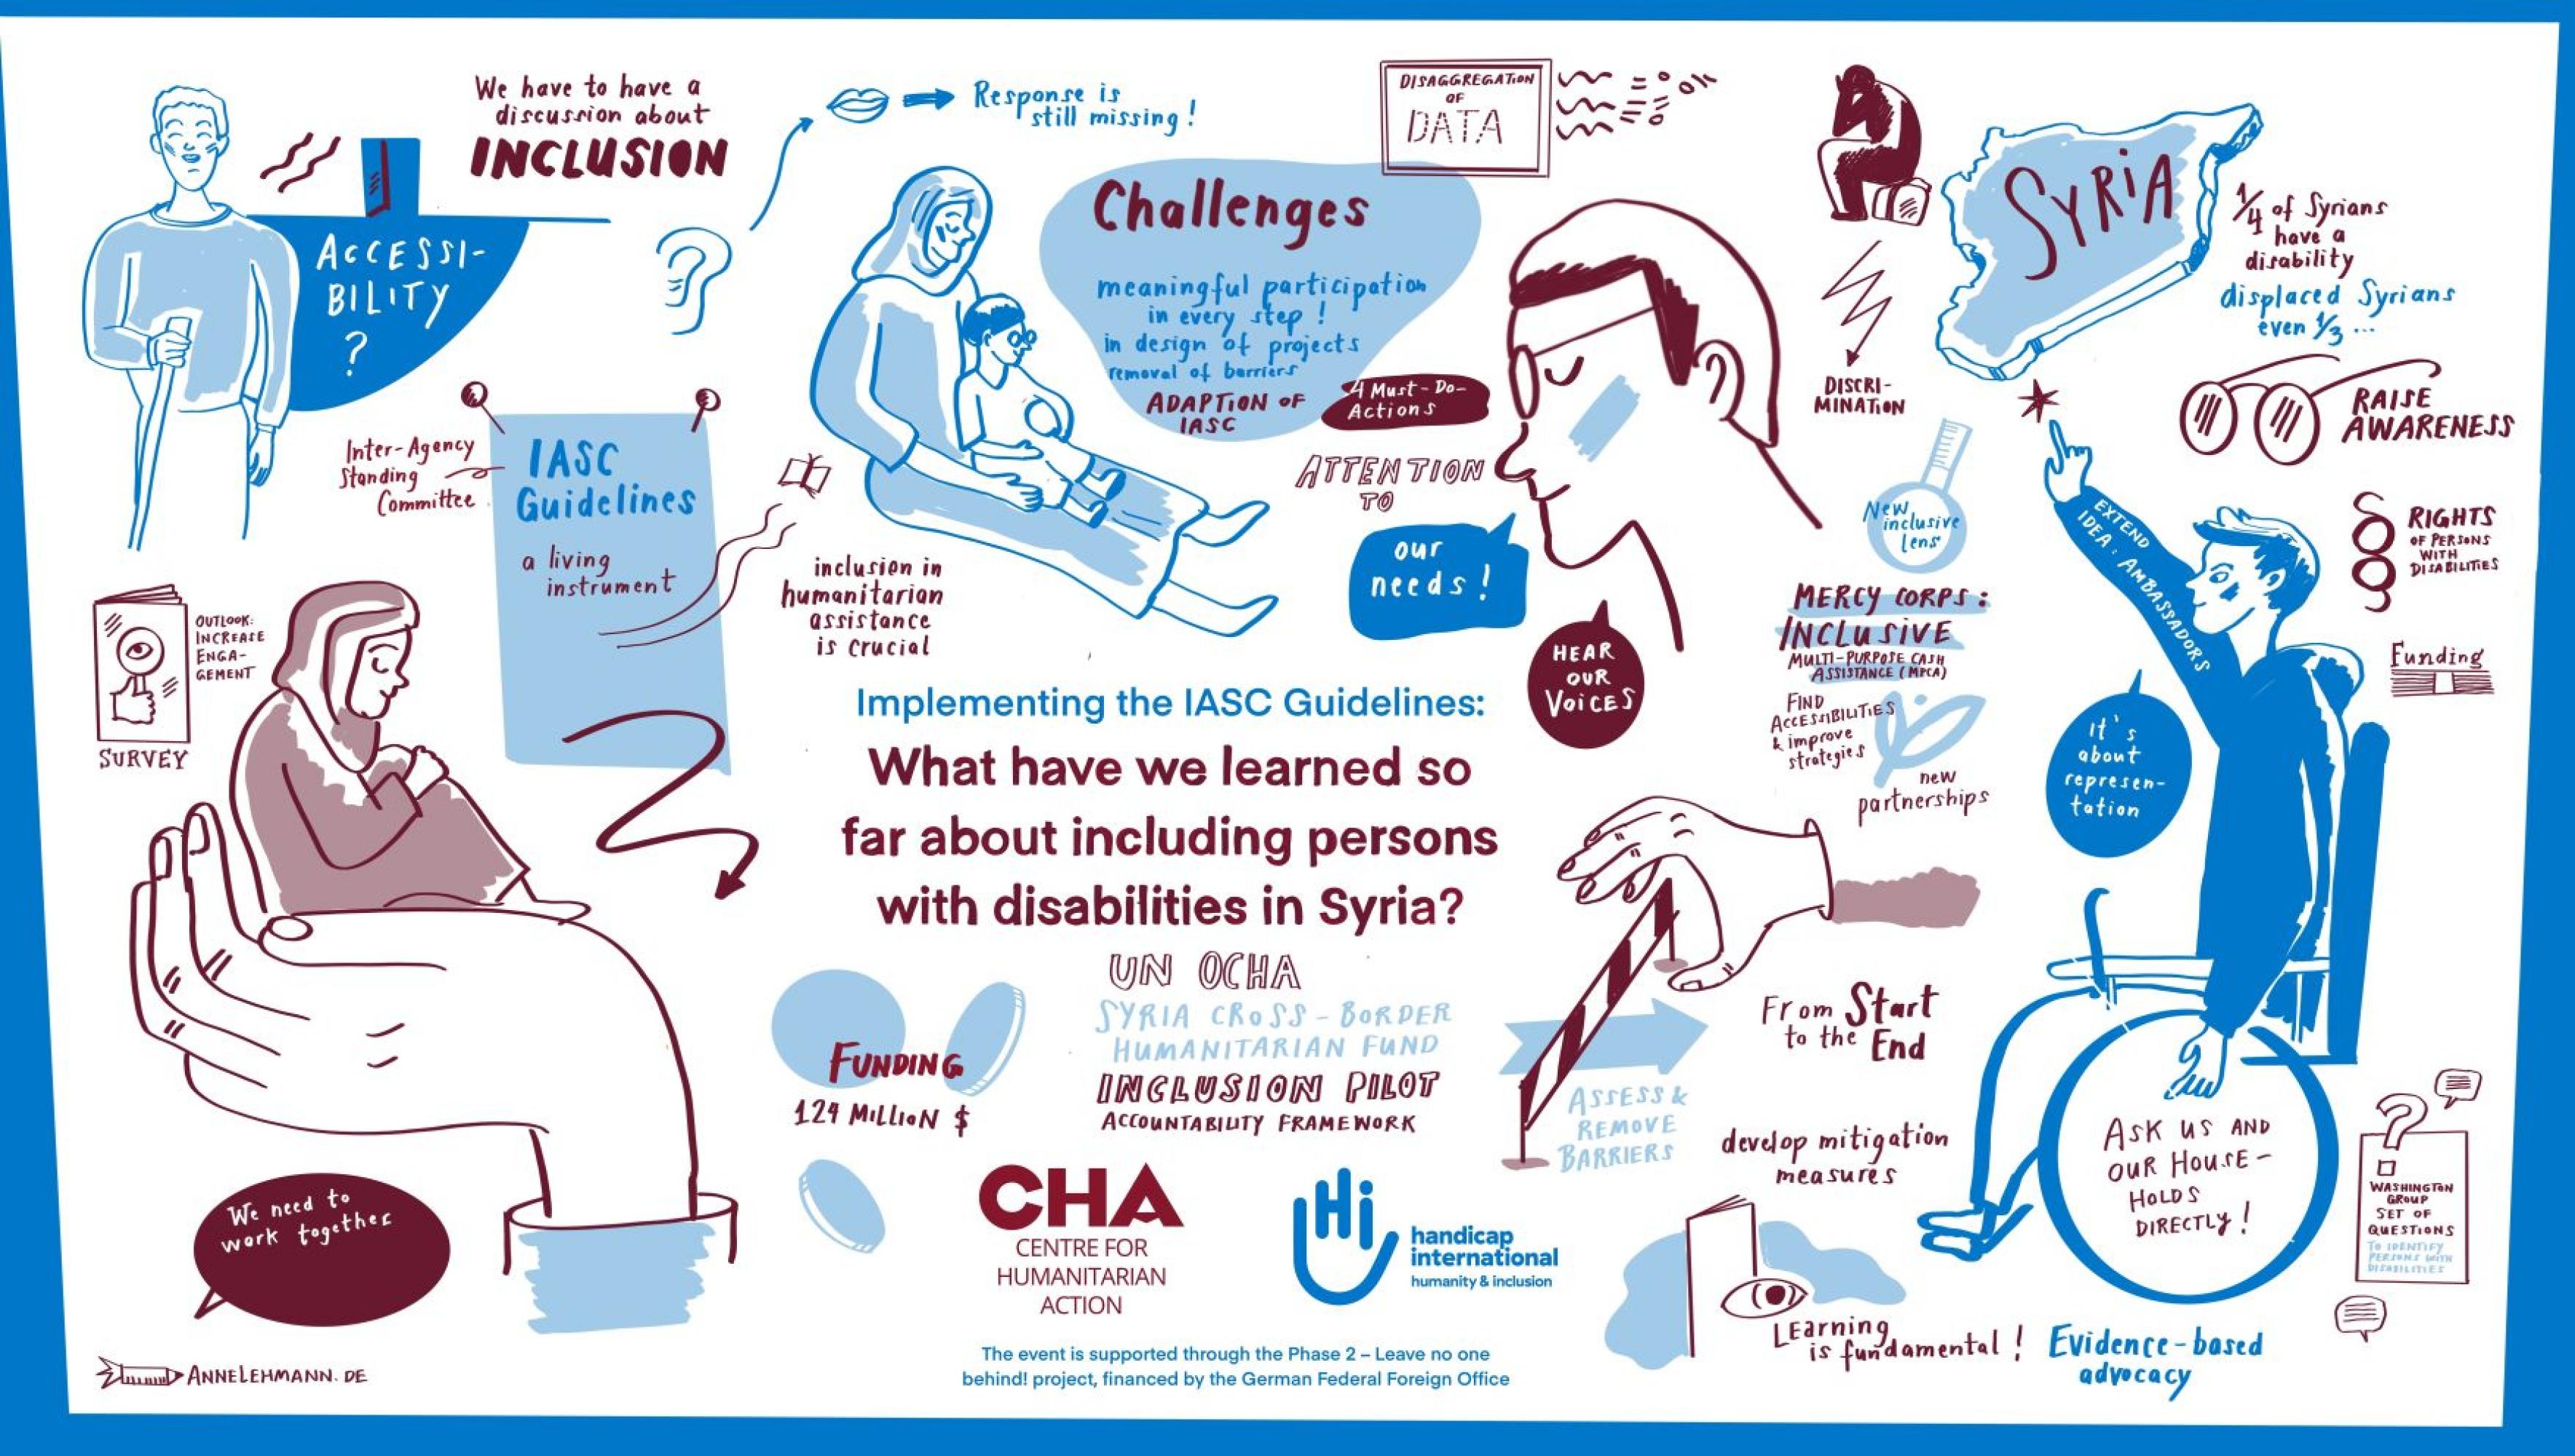 Graphik mit den Kernaussagen der Paneldiskussion: Implementierung der IASC-Leitlinien über die Inklusion von Behinderung in Syrien.